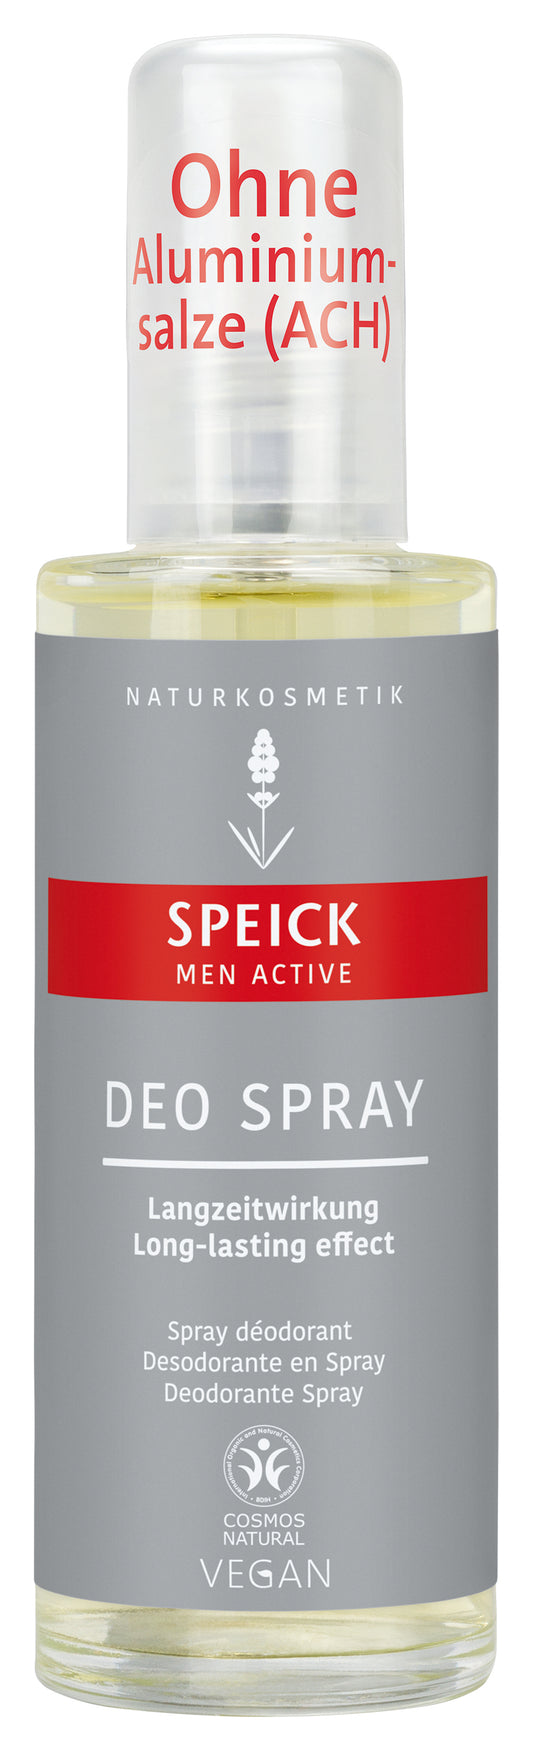 Speick Men Active Deodorant Spray (75ml)